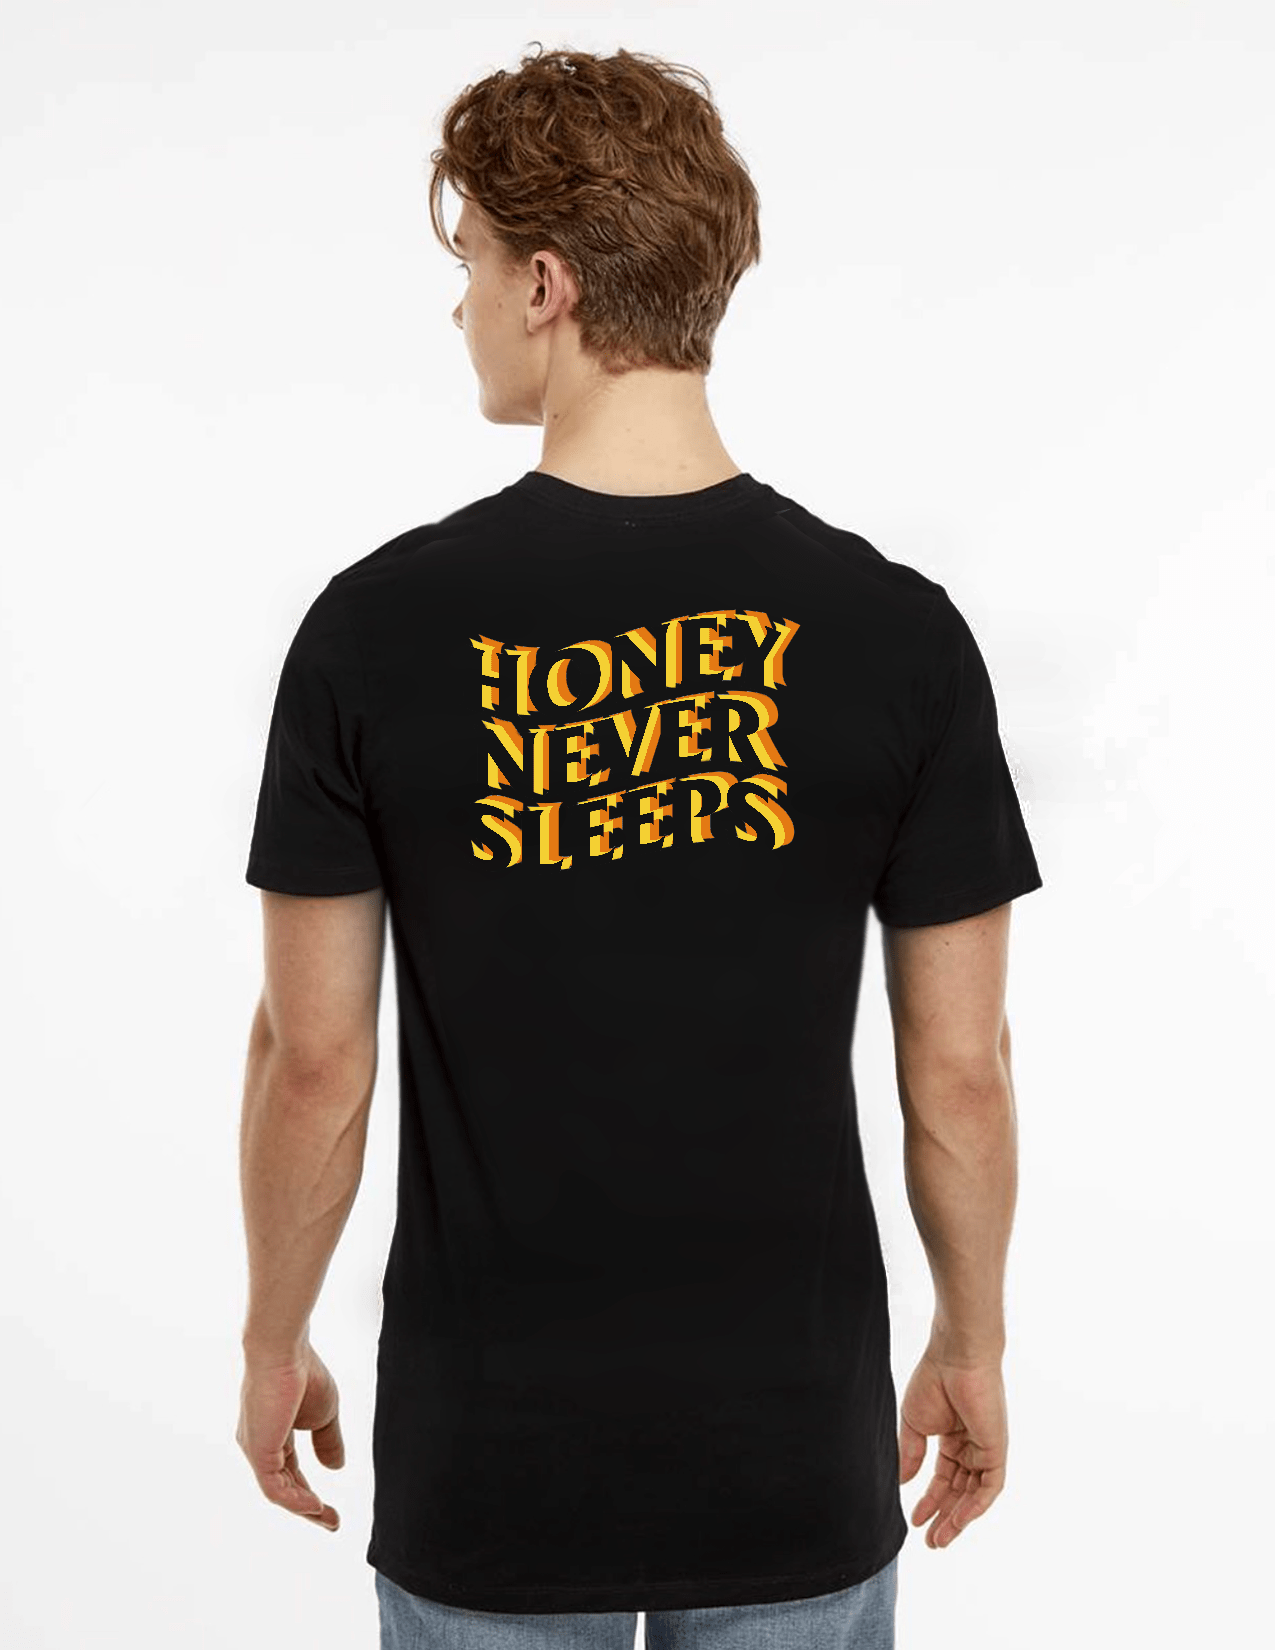 Honey Never Sleeps Shirt - Honeyland